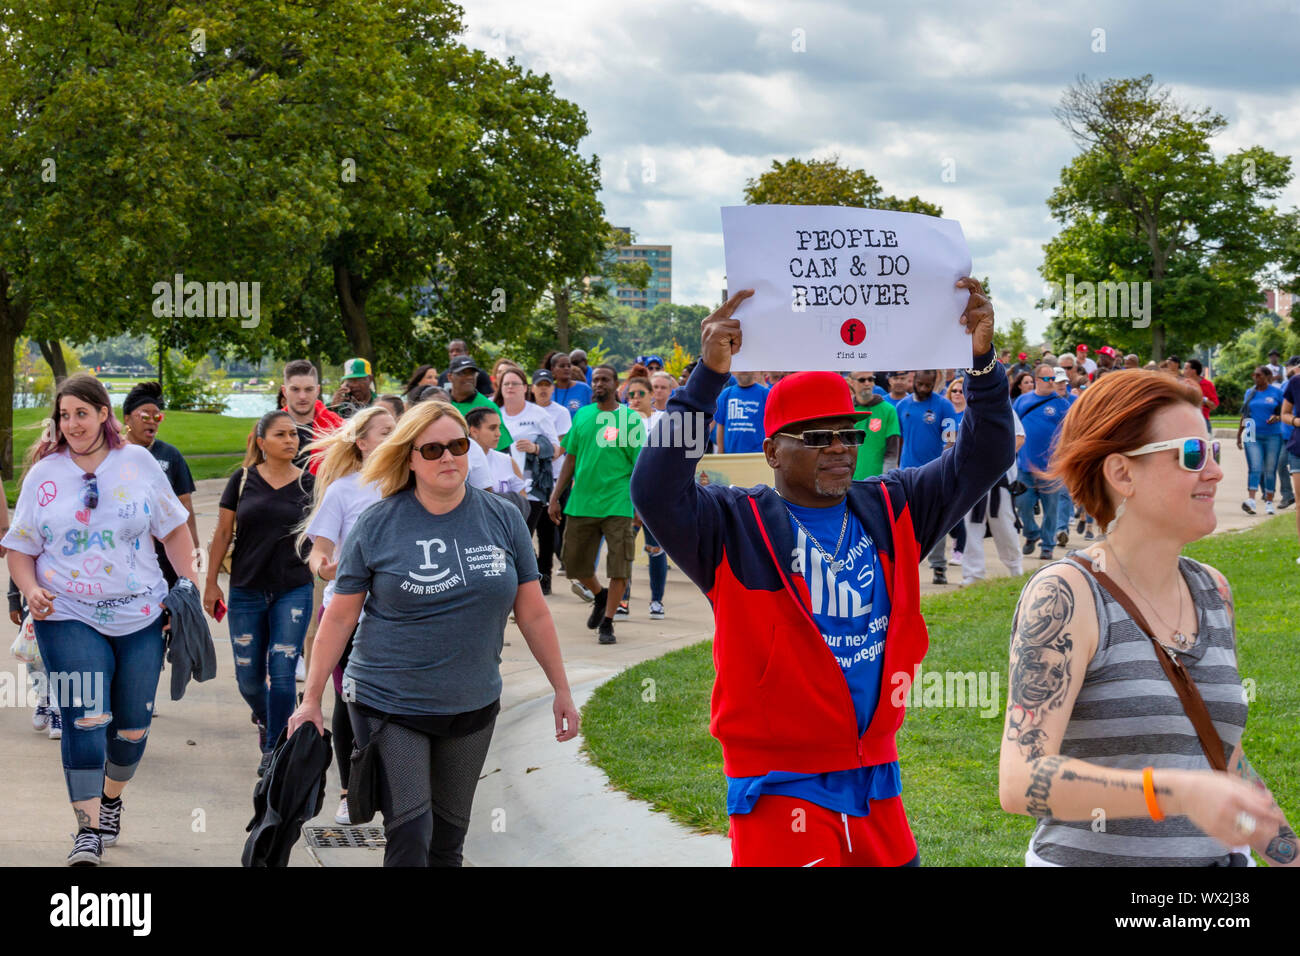 Detroit, Michigan - El Michigan celebrar la recuperación andando y Rally, celebrando las personas que se recuperan de la adicción a las drogas y otros opioides. En el evento, Foto de stock